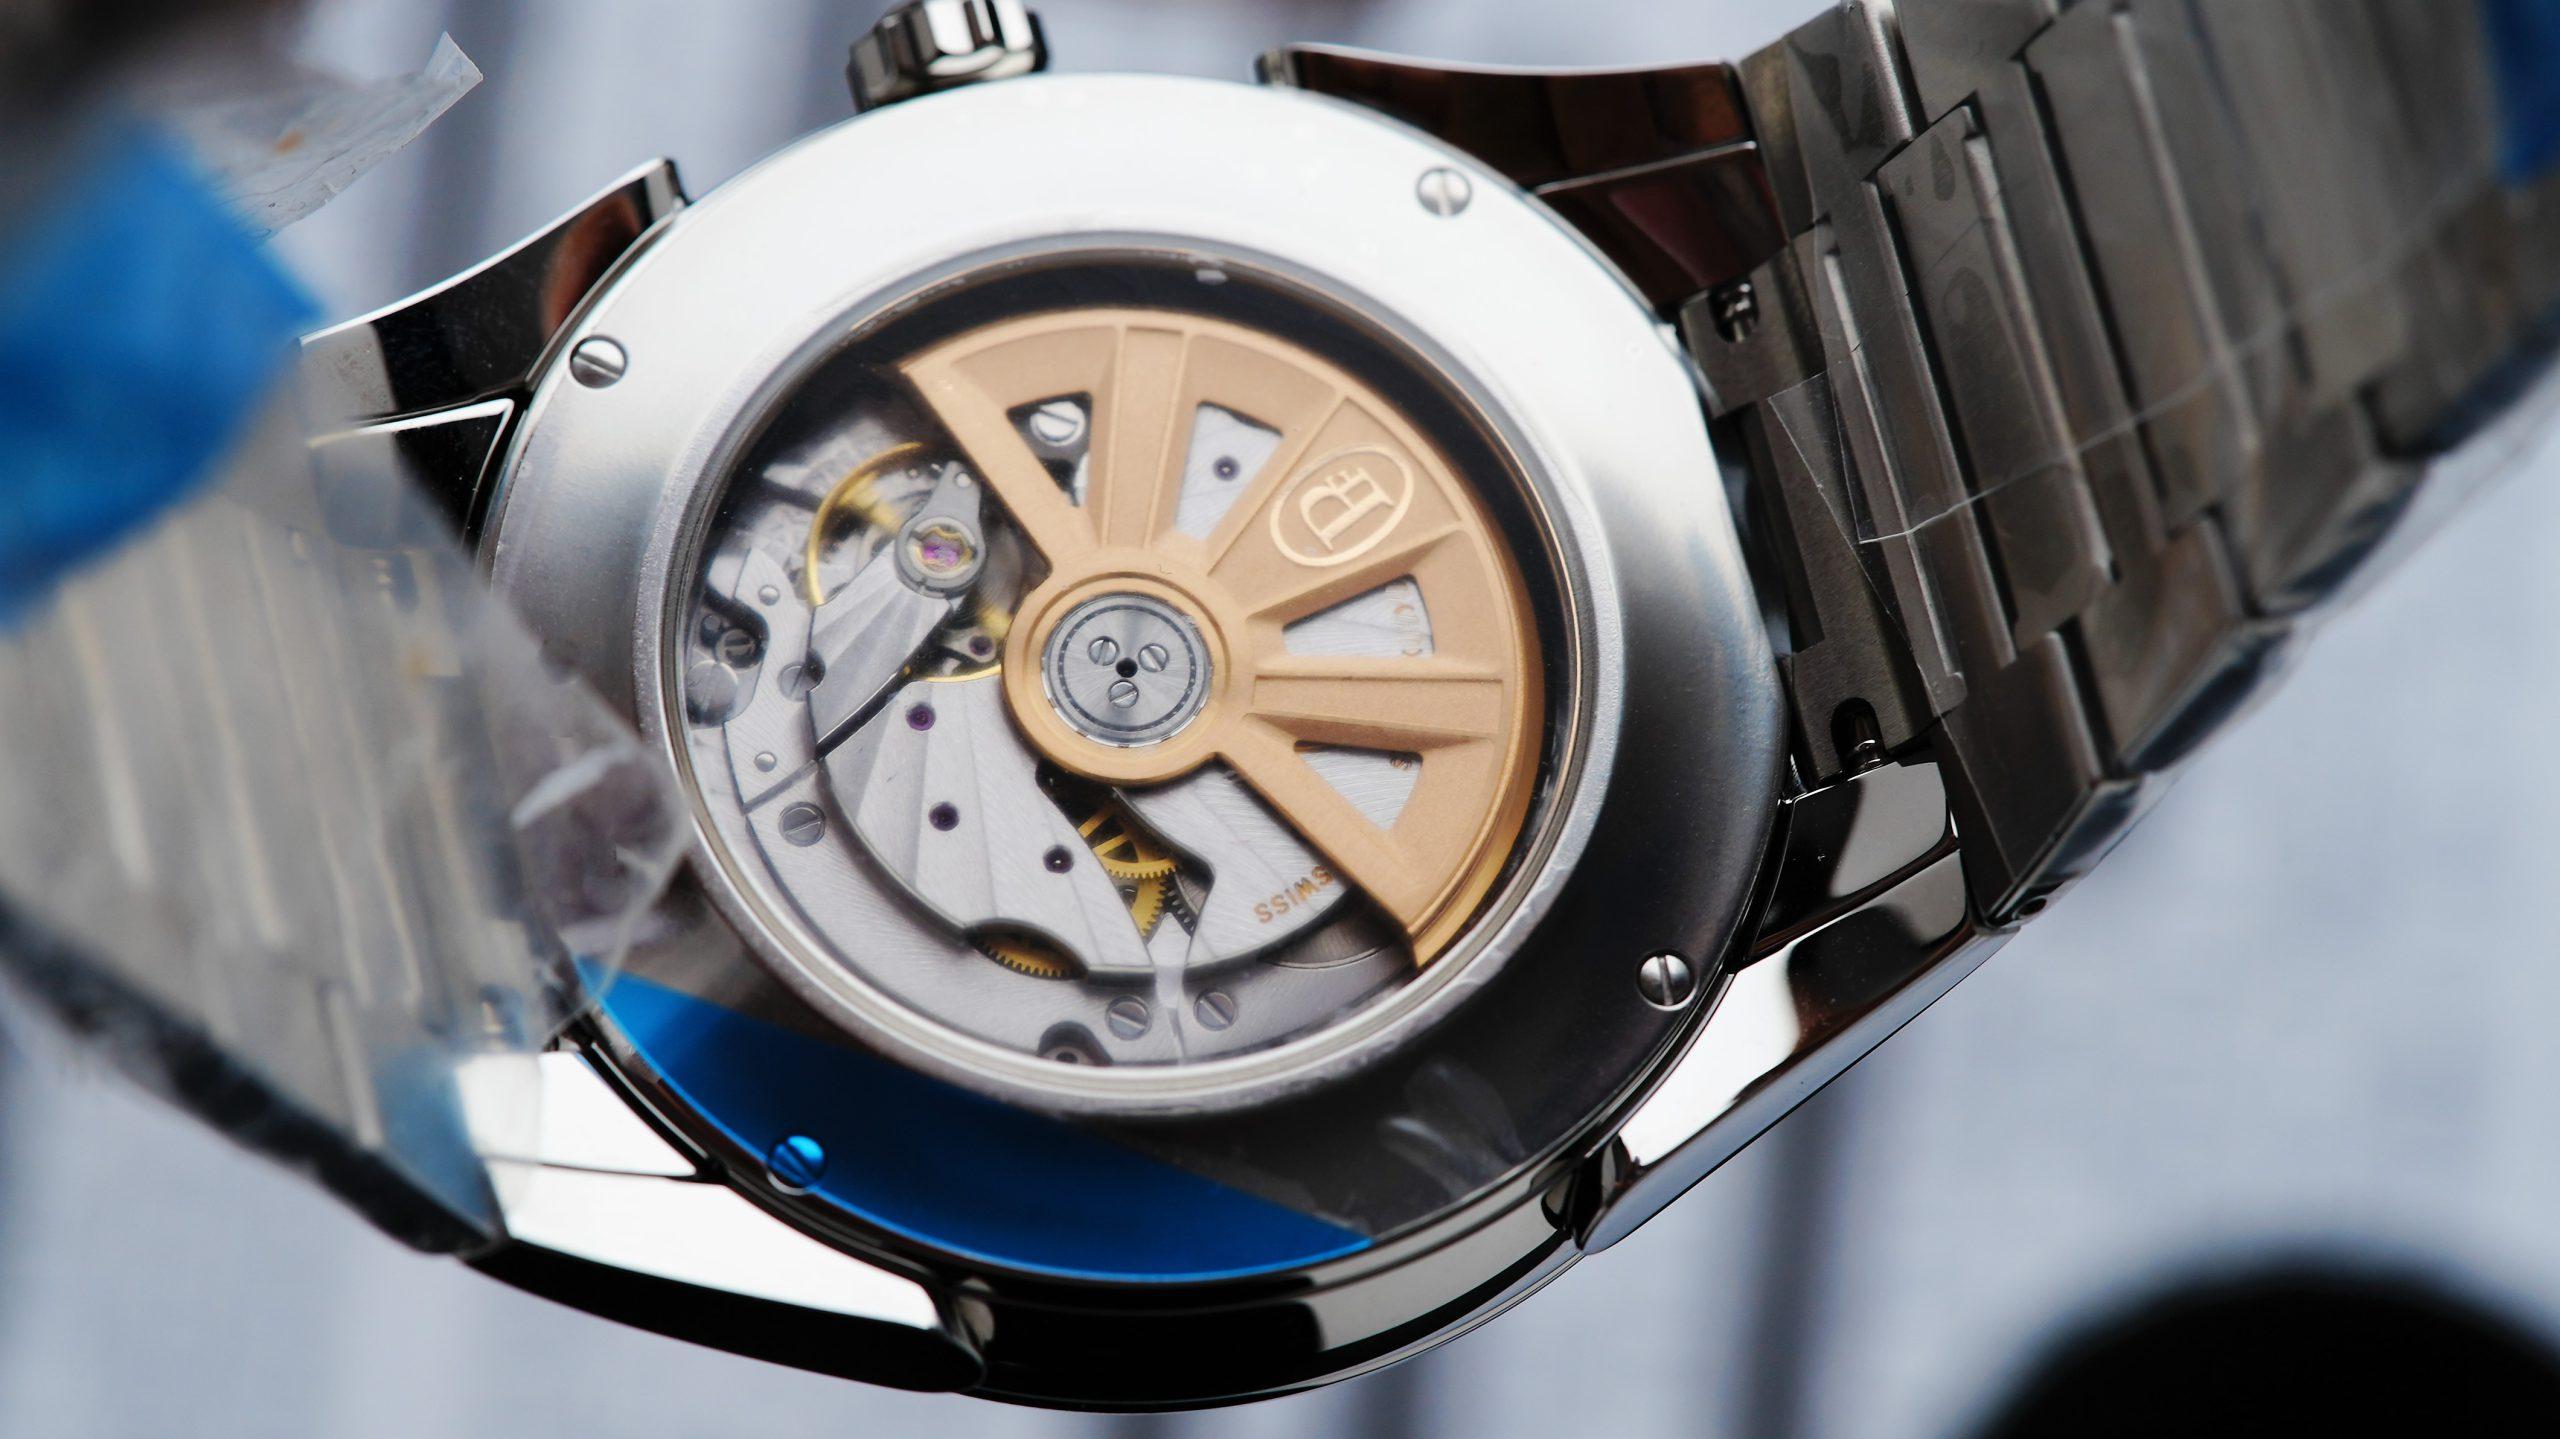 Back side of the Parmigiani Fleurier Tonda Tondagraph GT 42mm Panda watch case.